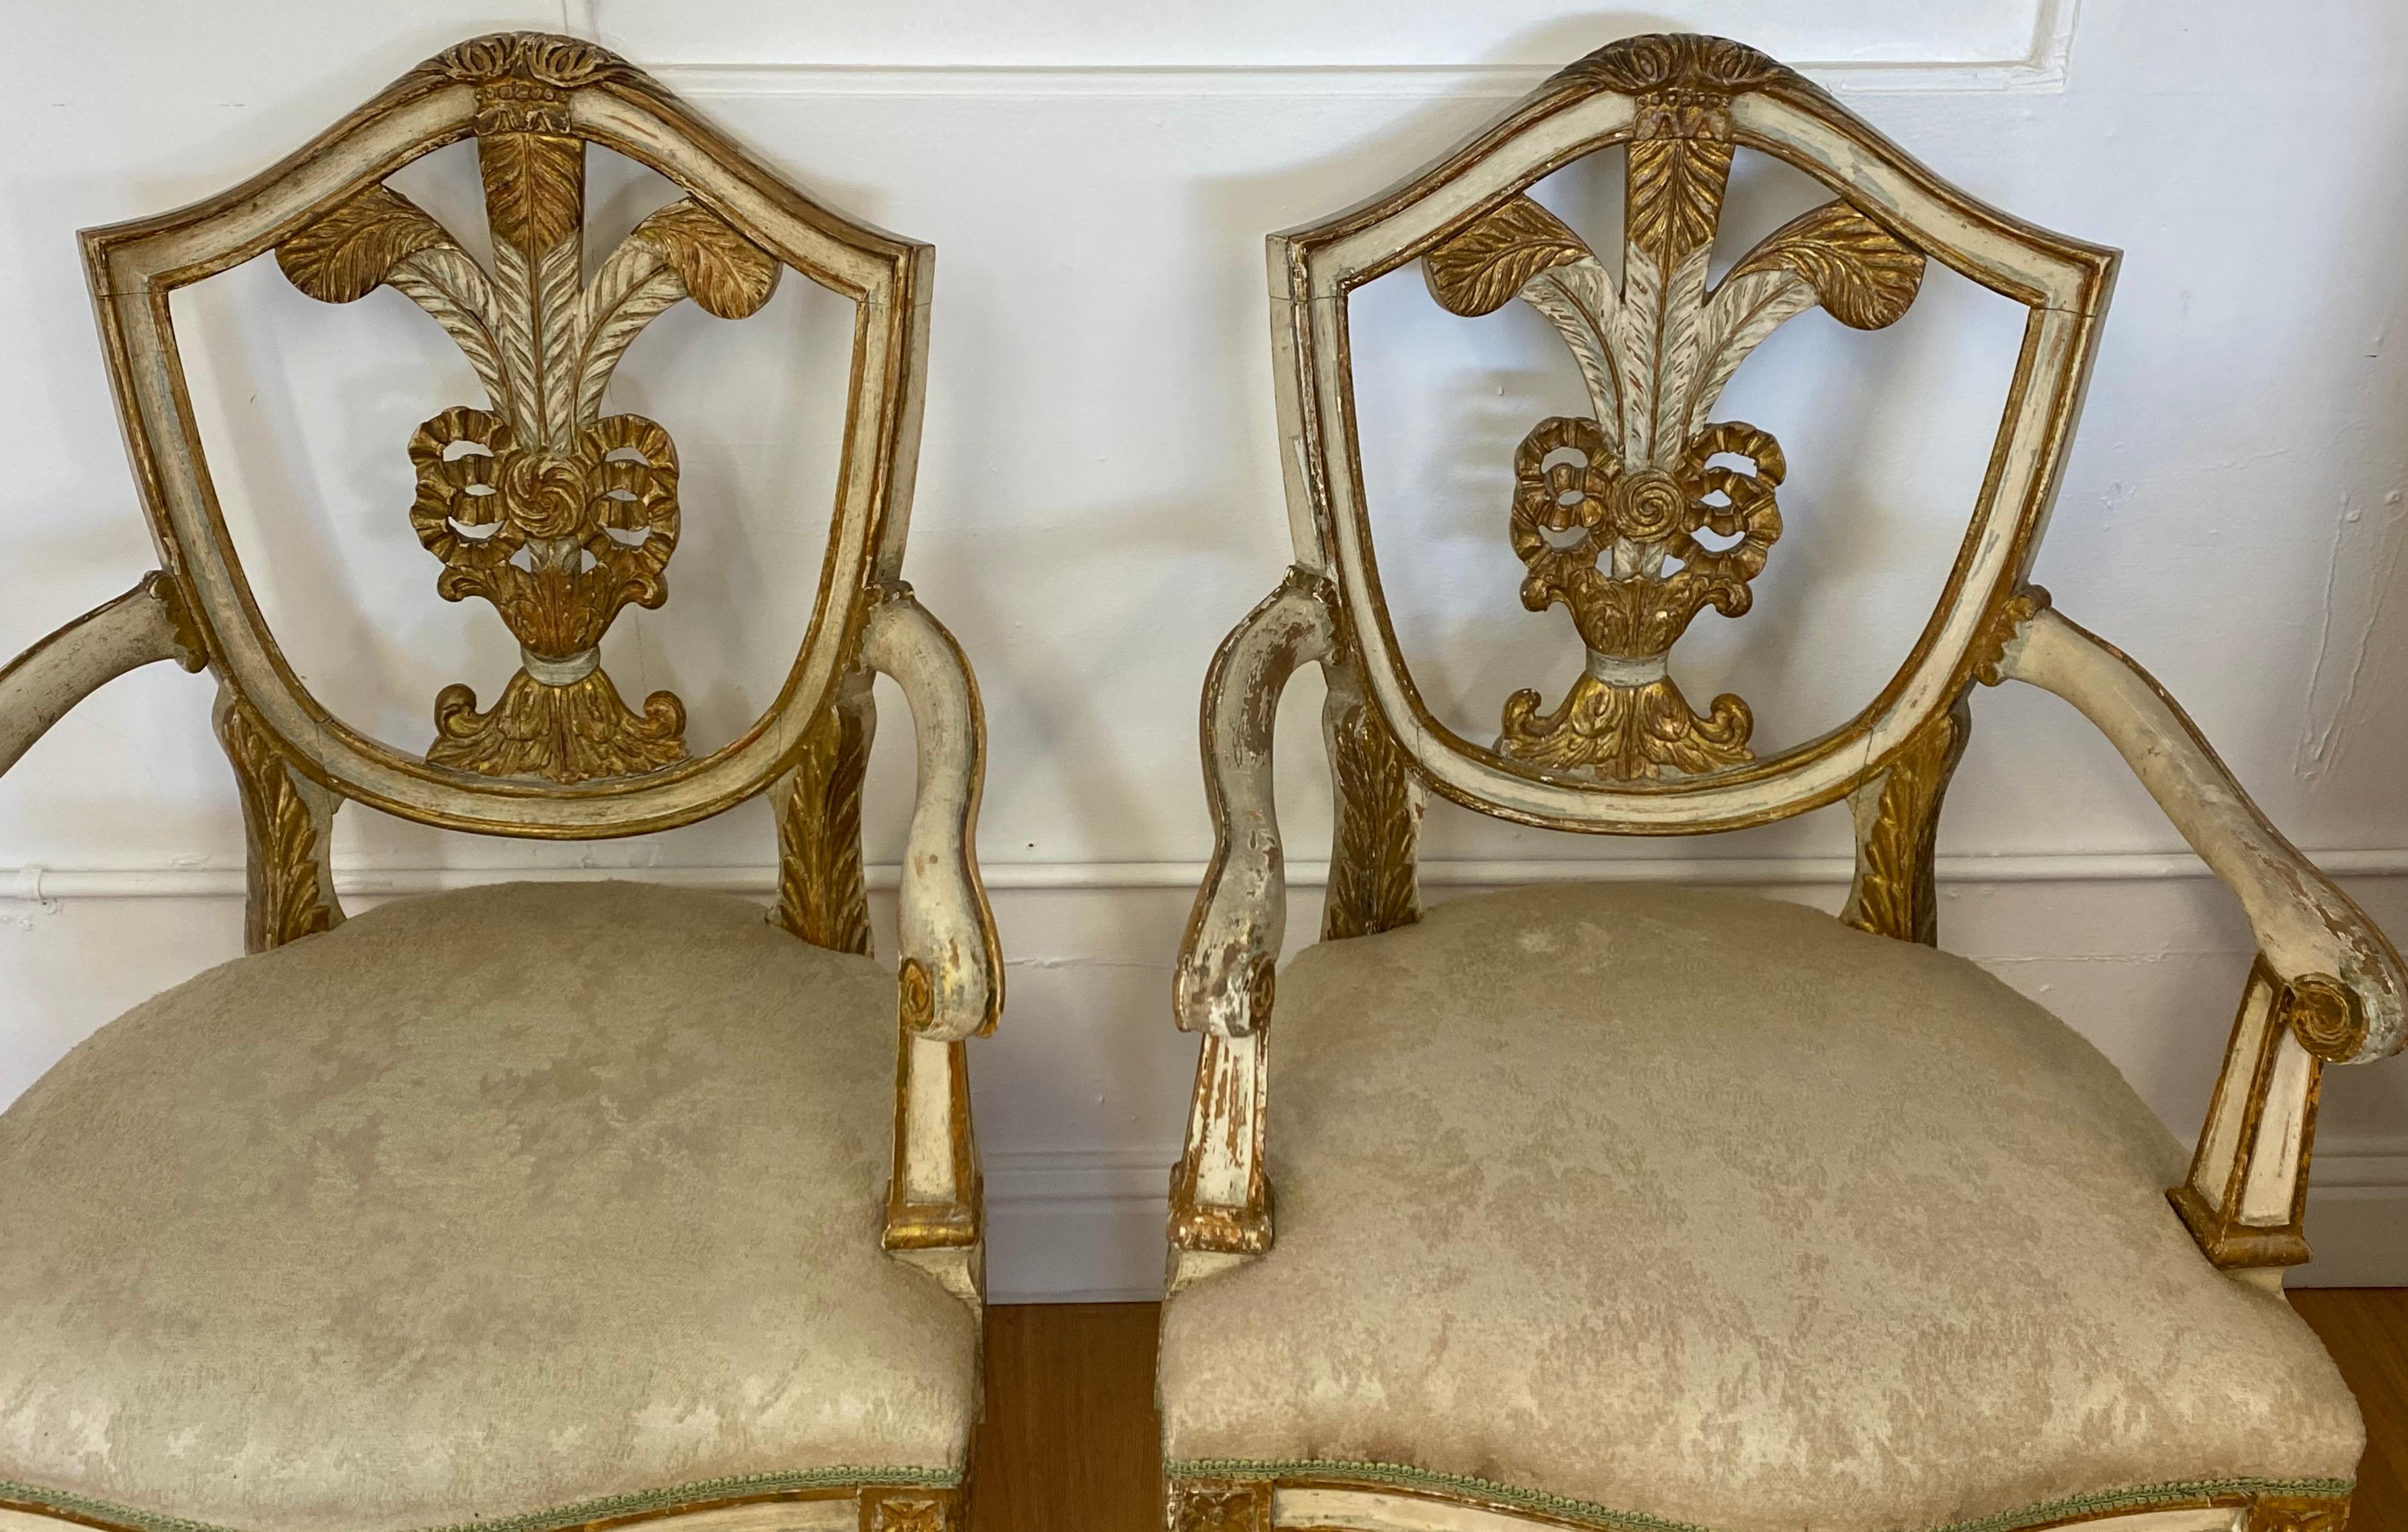 Paire de fauteuils de style Prince de Galles du début du 20e siècle

Peint en blanc coquille d'œuf et or

Mesures : 24